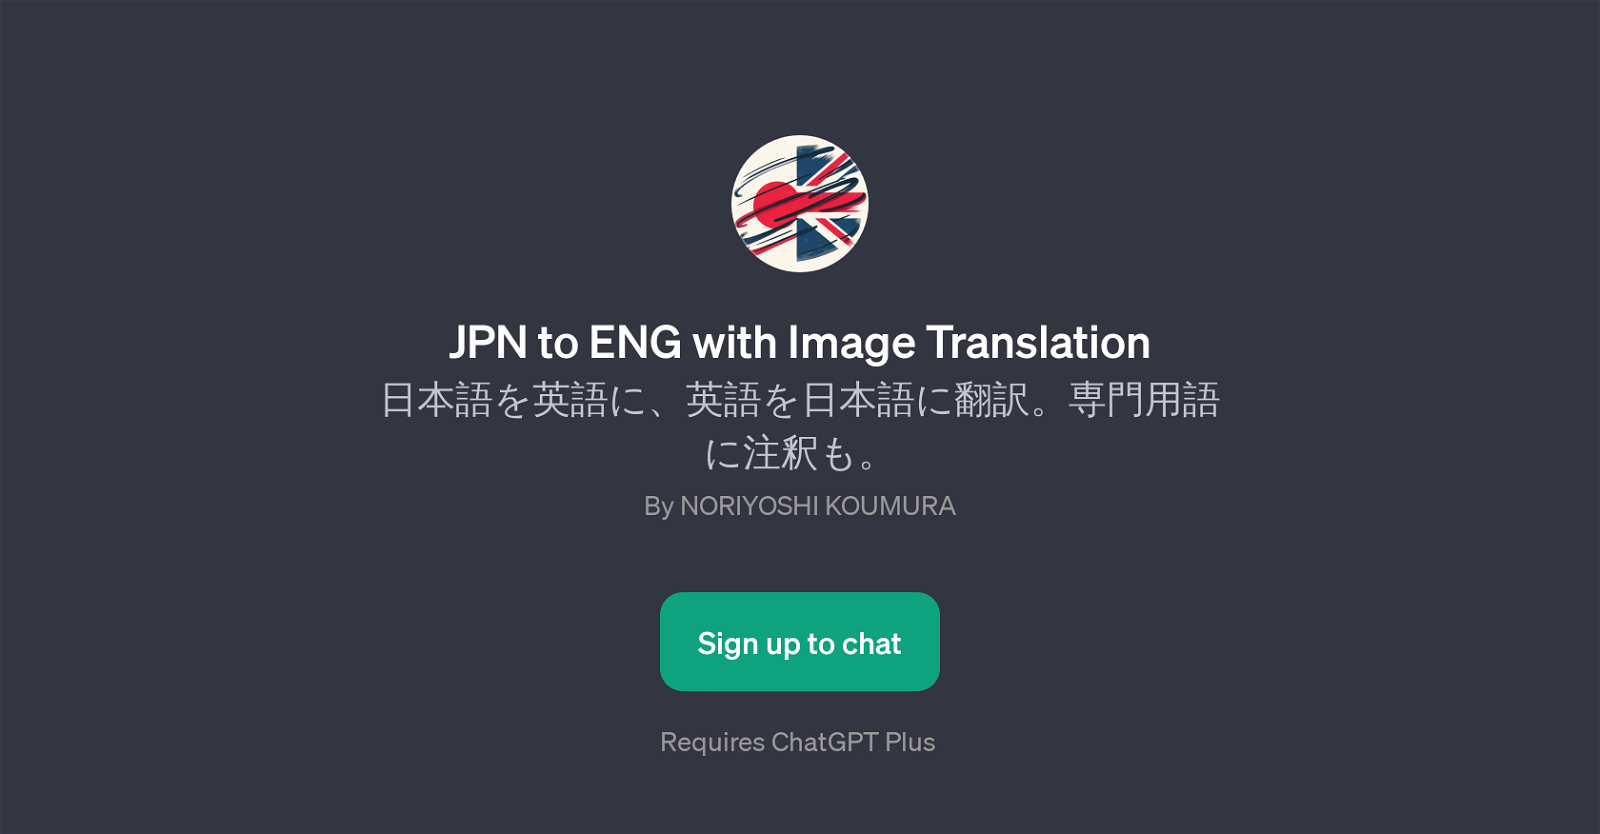 JPN to ENG with Image Translation website